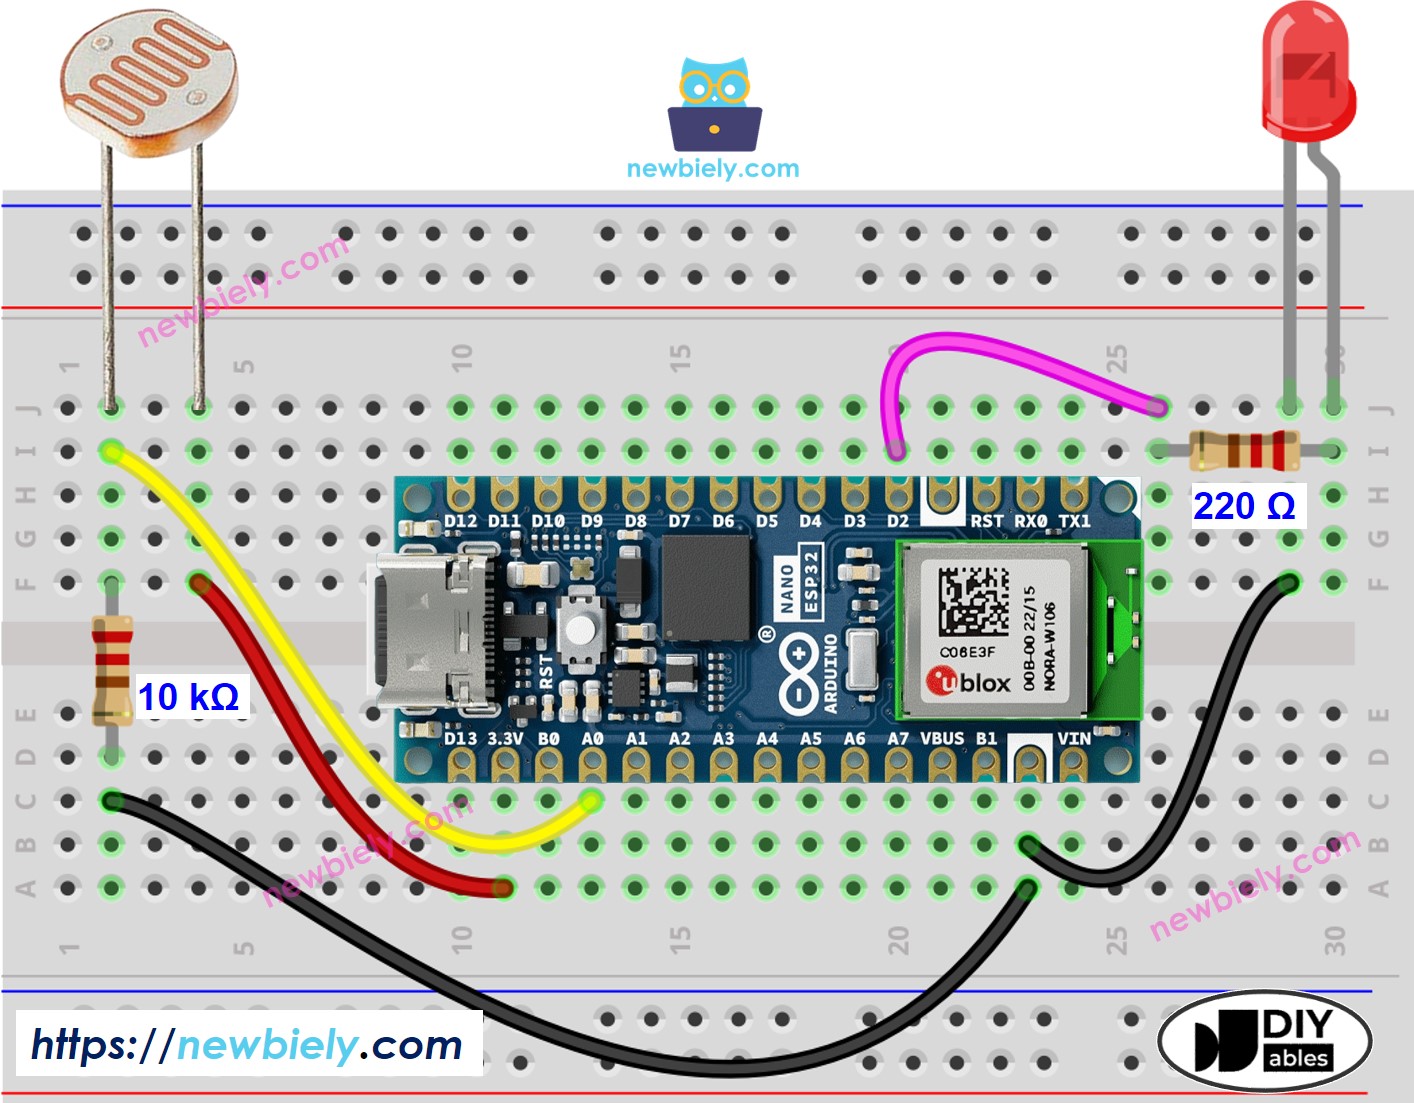 The wiring diagram between Arduino Nano ESP32 and Light Sensor LED